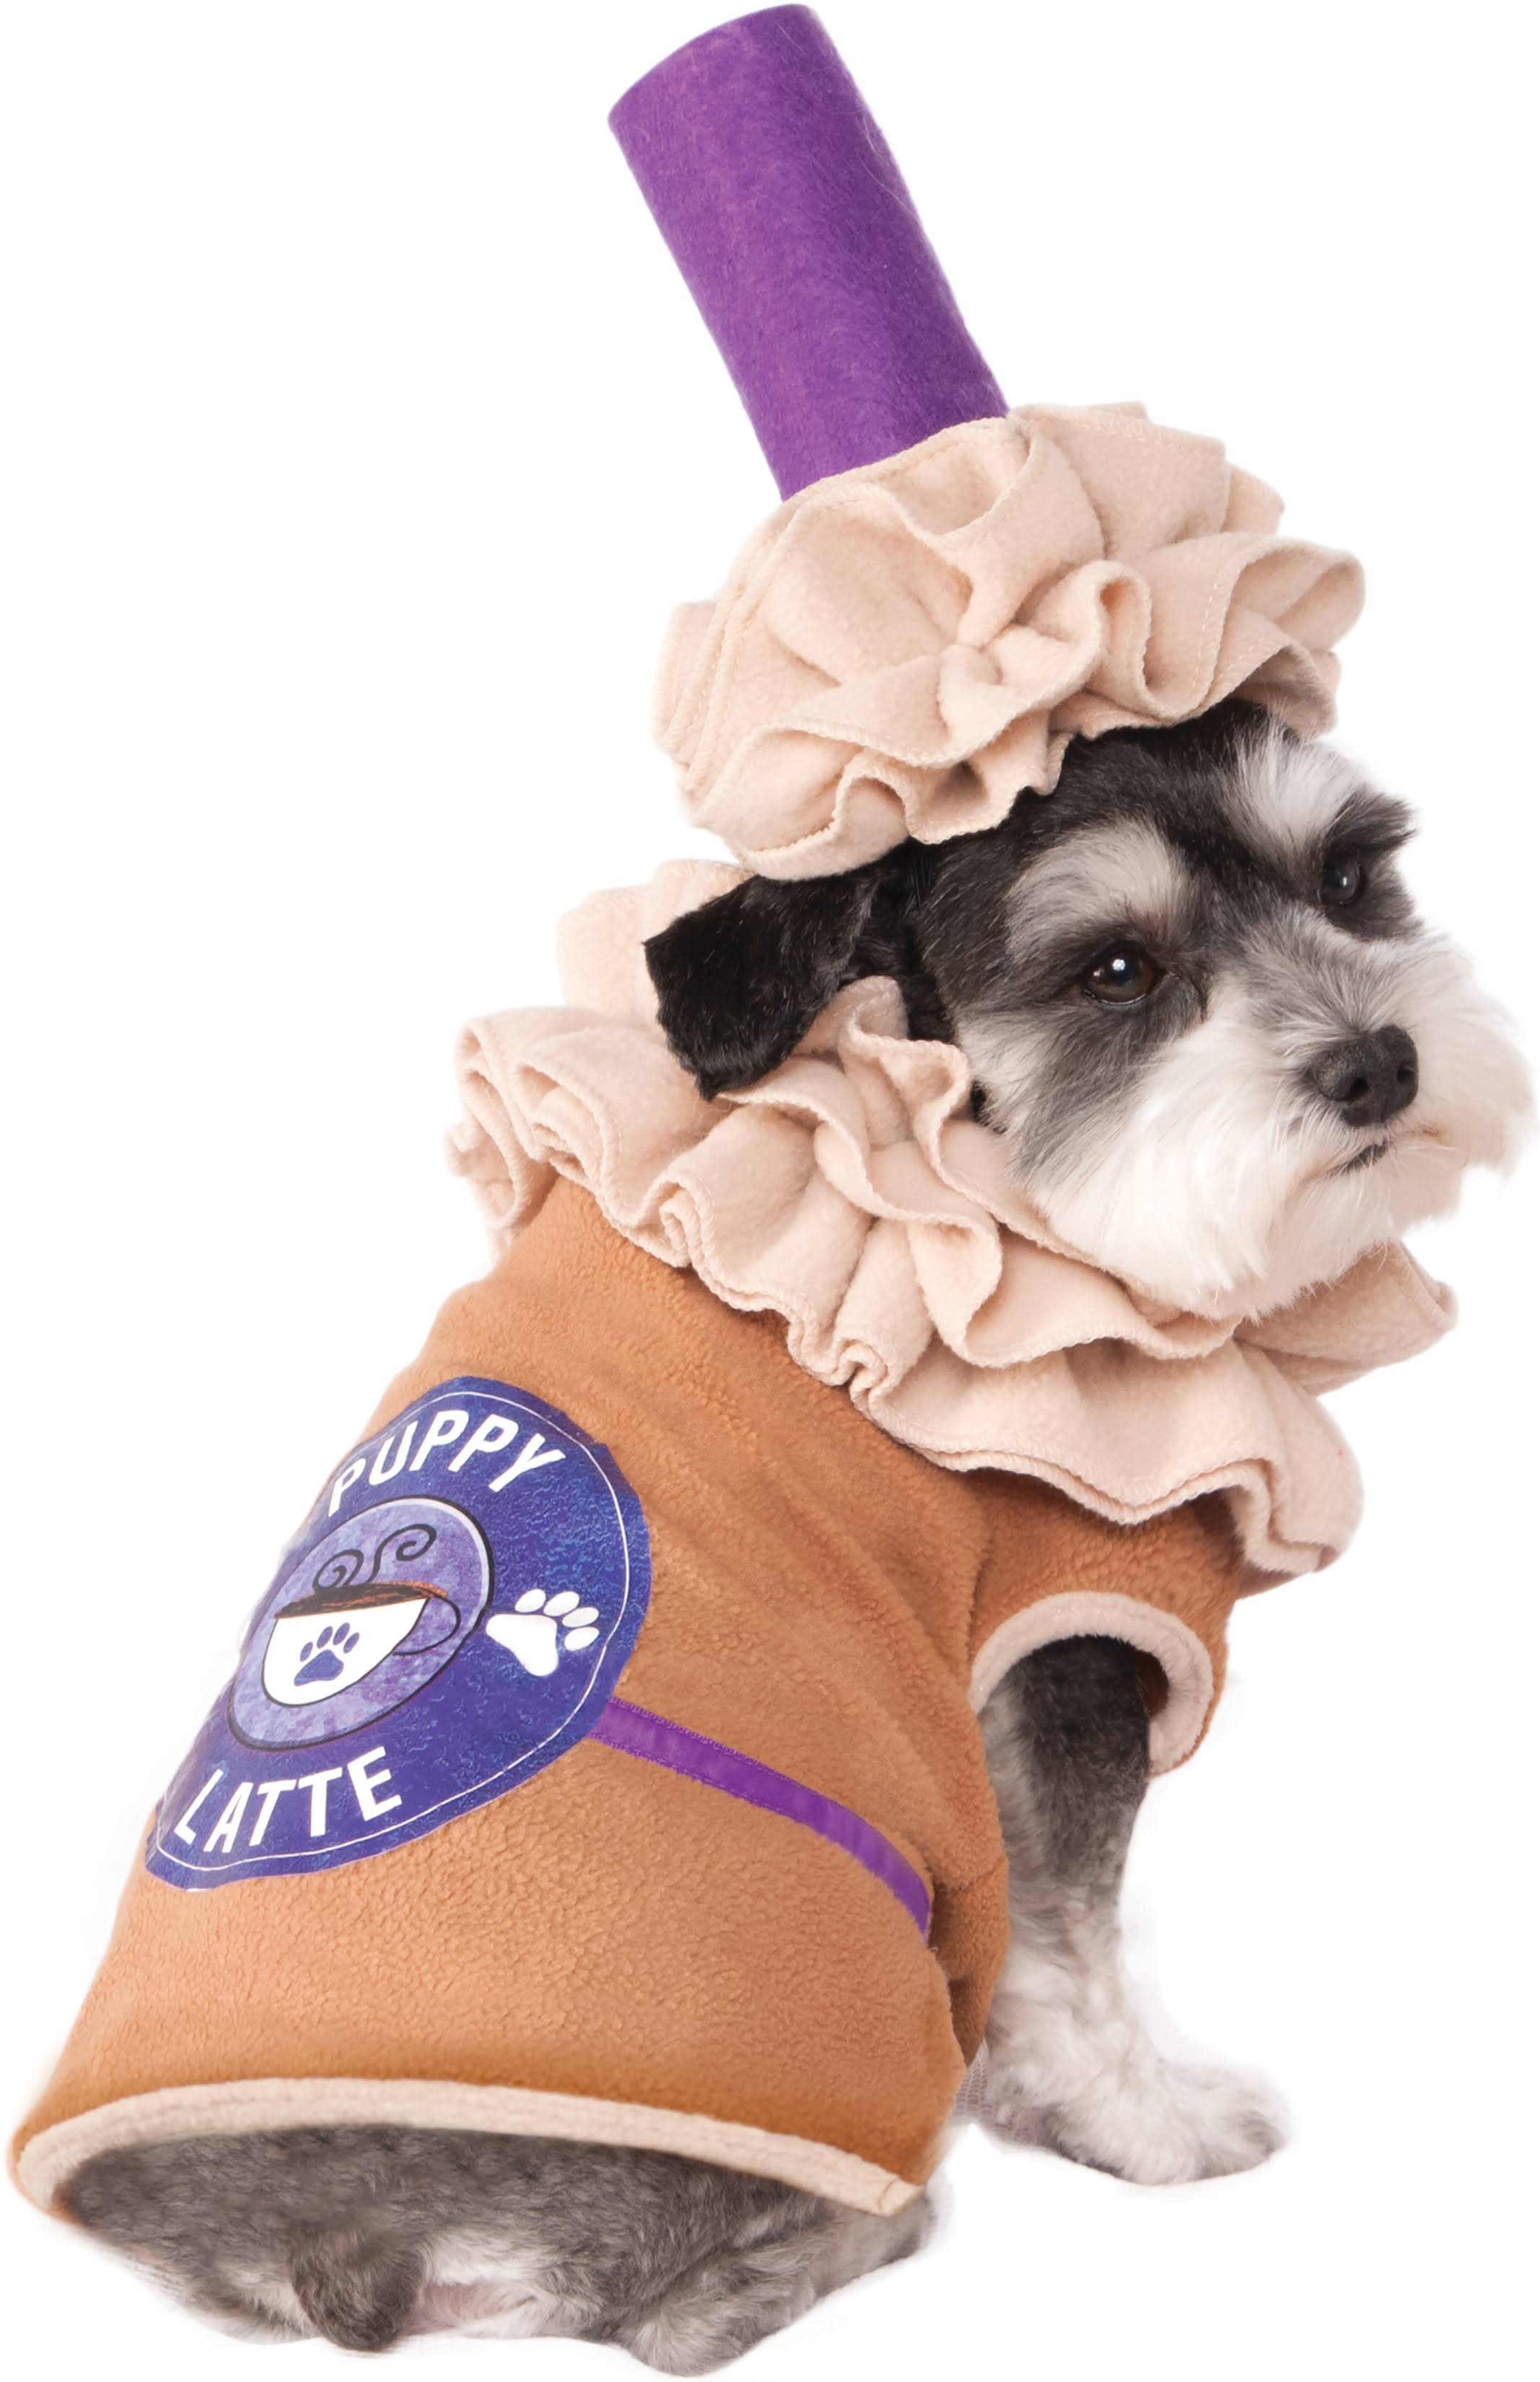 Pet Puppy Latte Costume - Medium